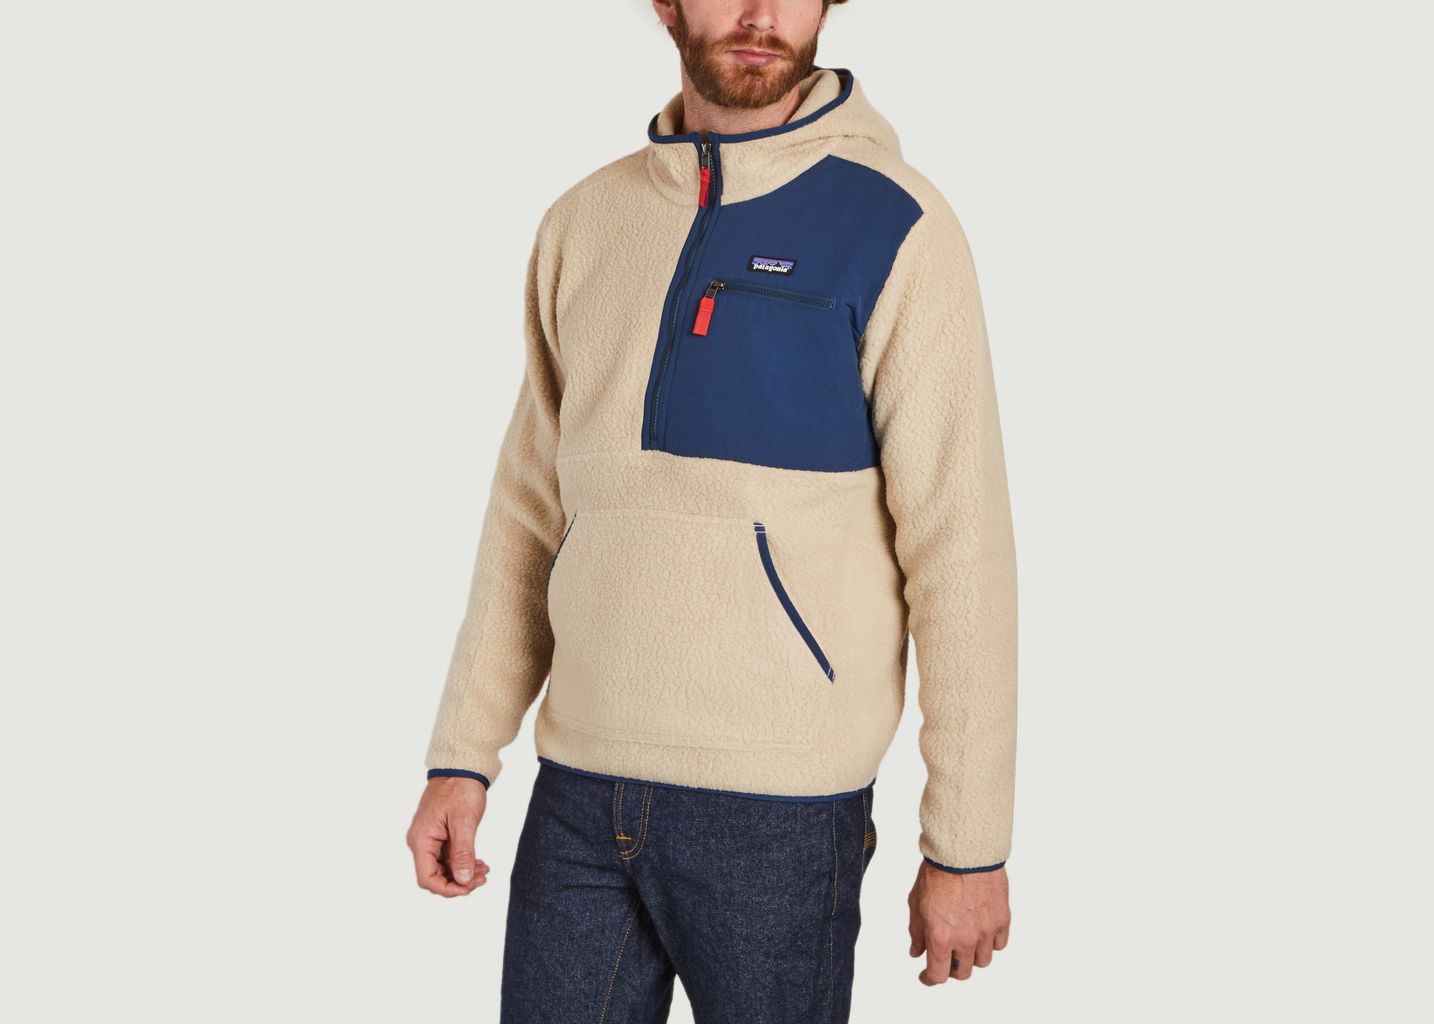 M's Retro Pile Sweater - Patagonia